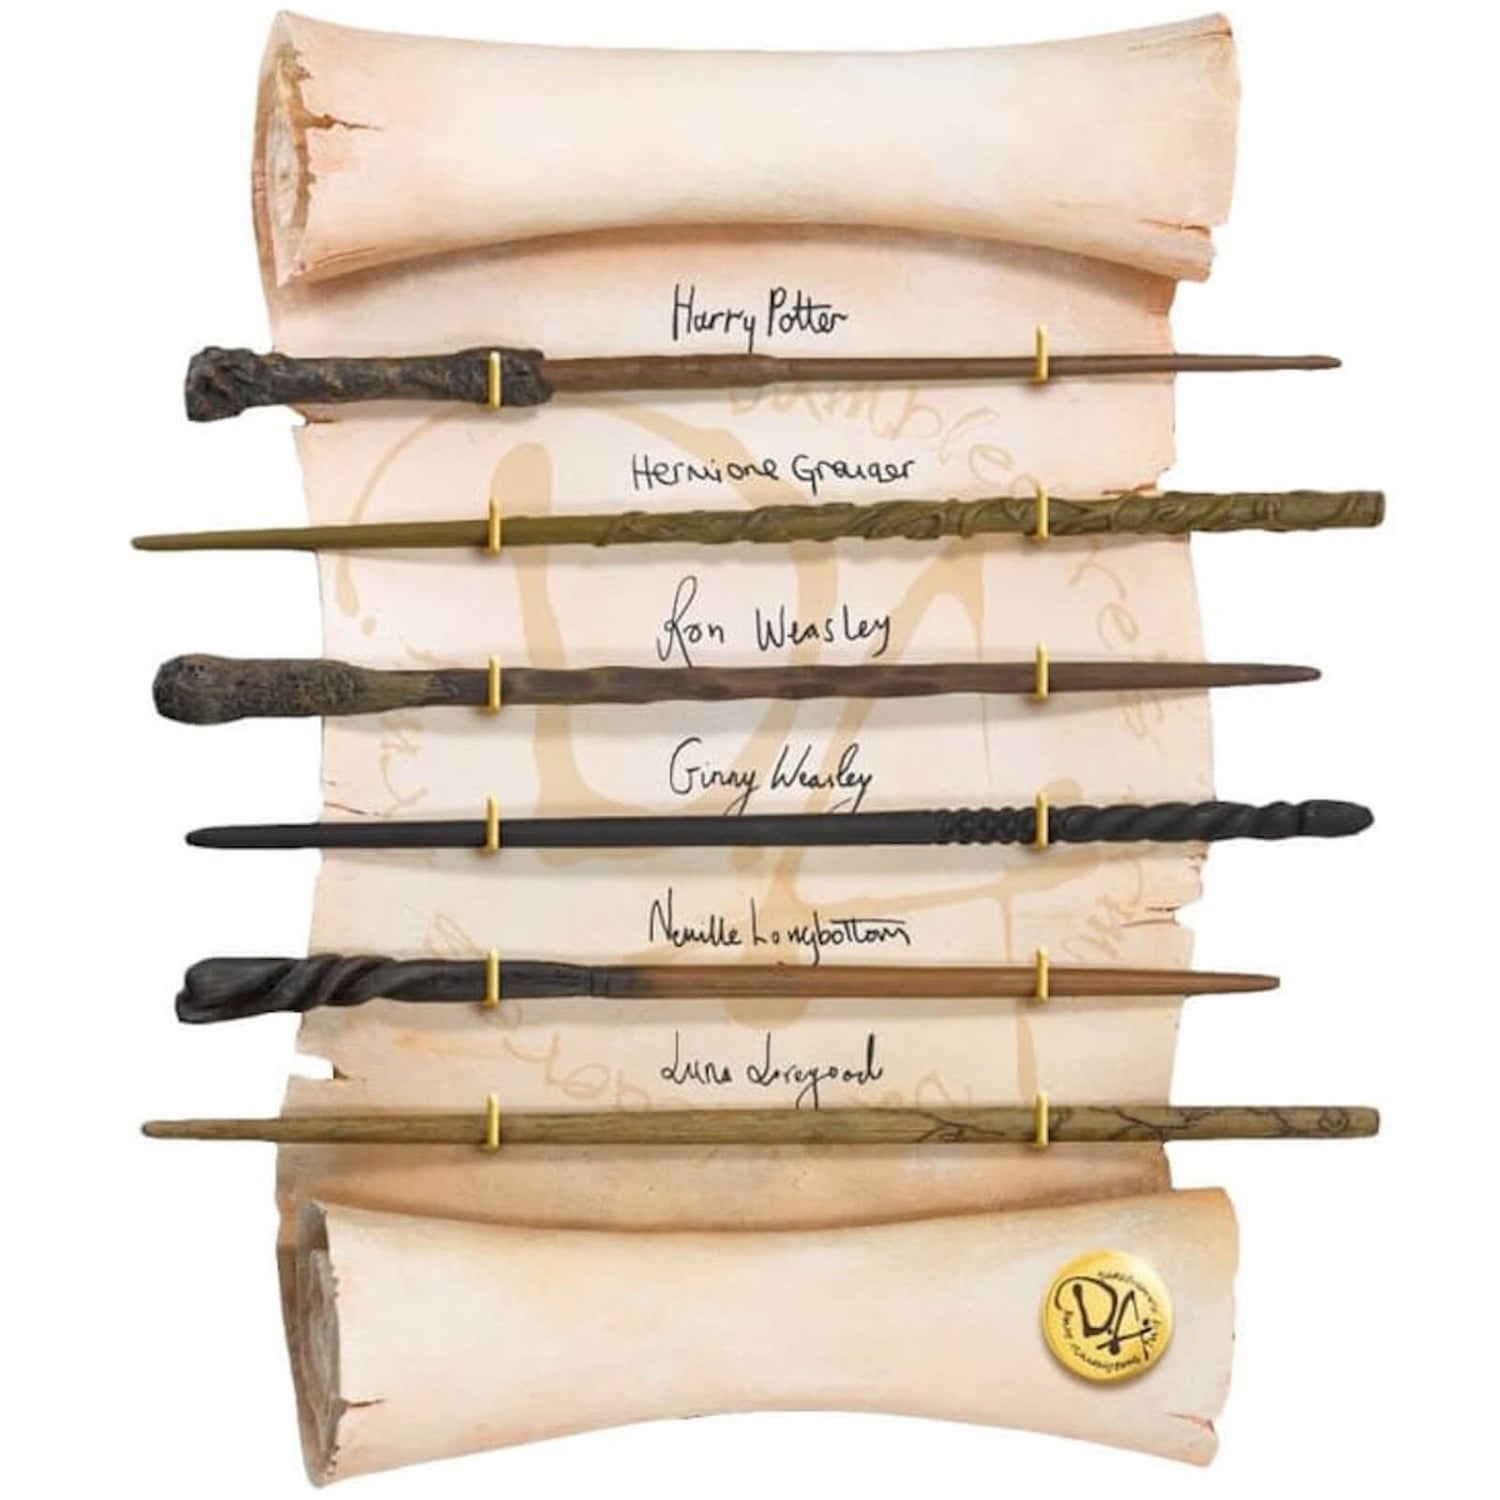 Une collection de baguettes Harry Potter officielles en bois !